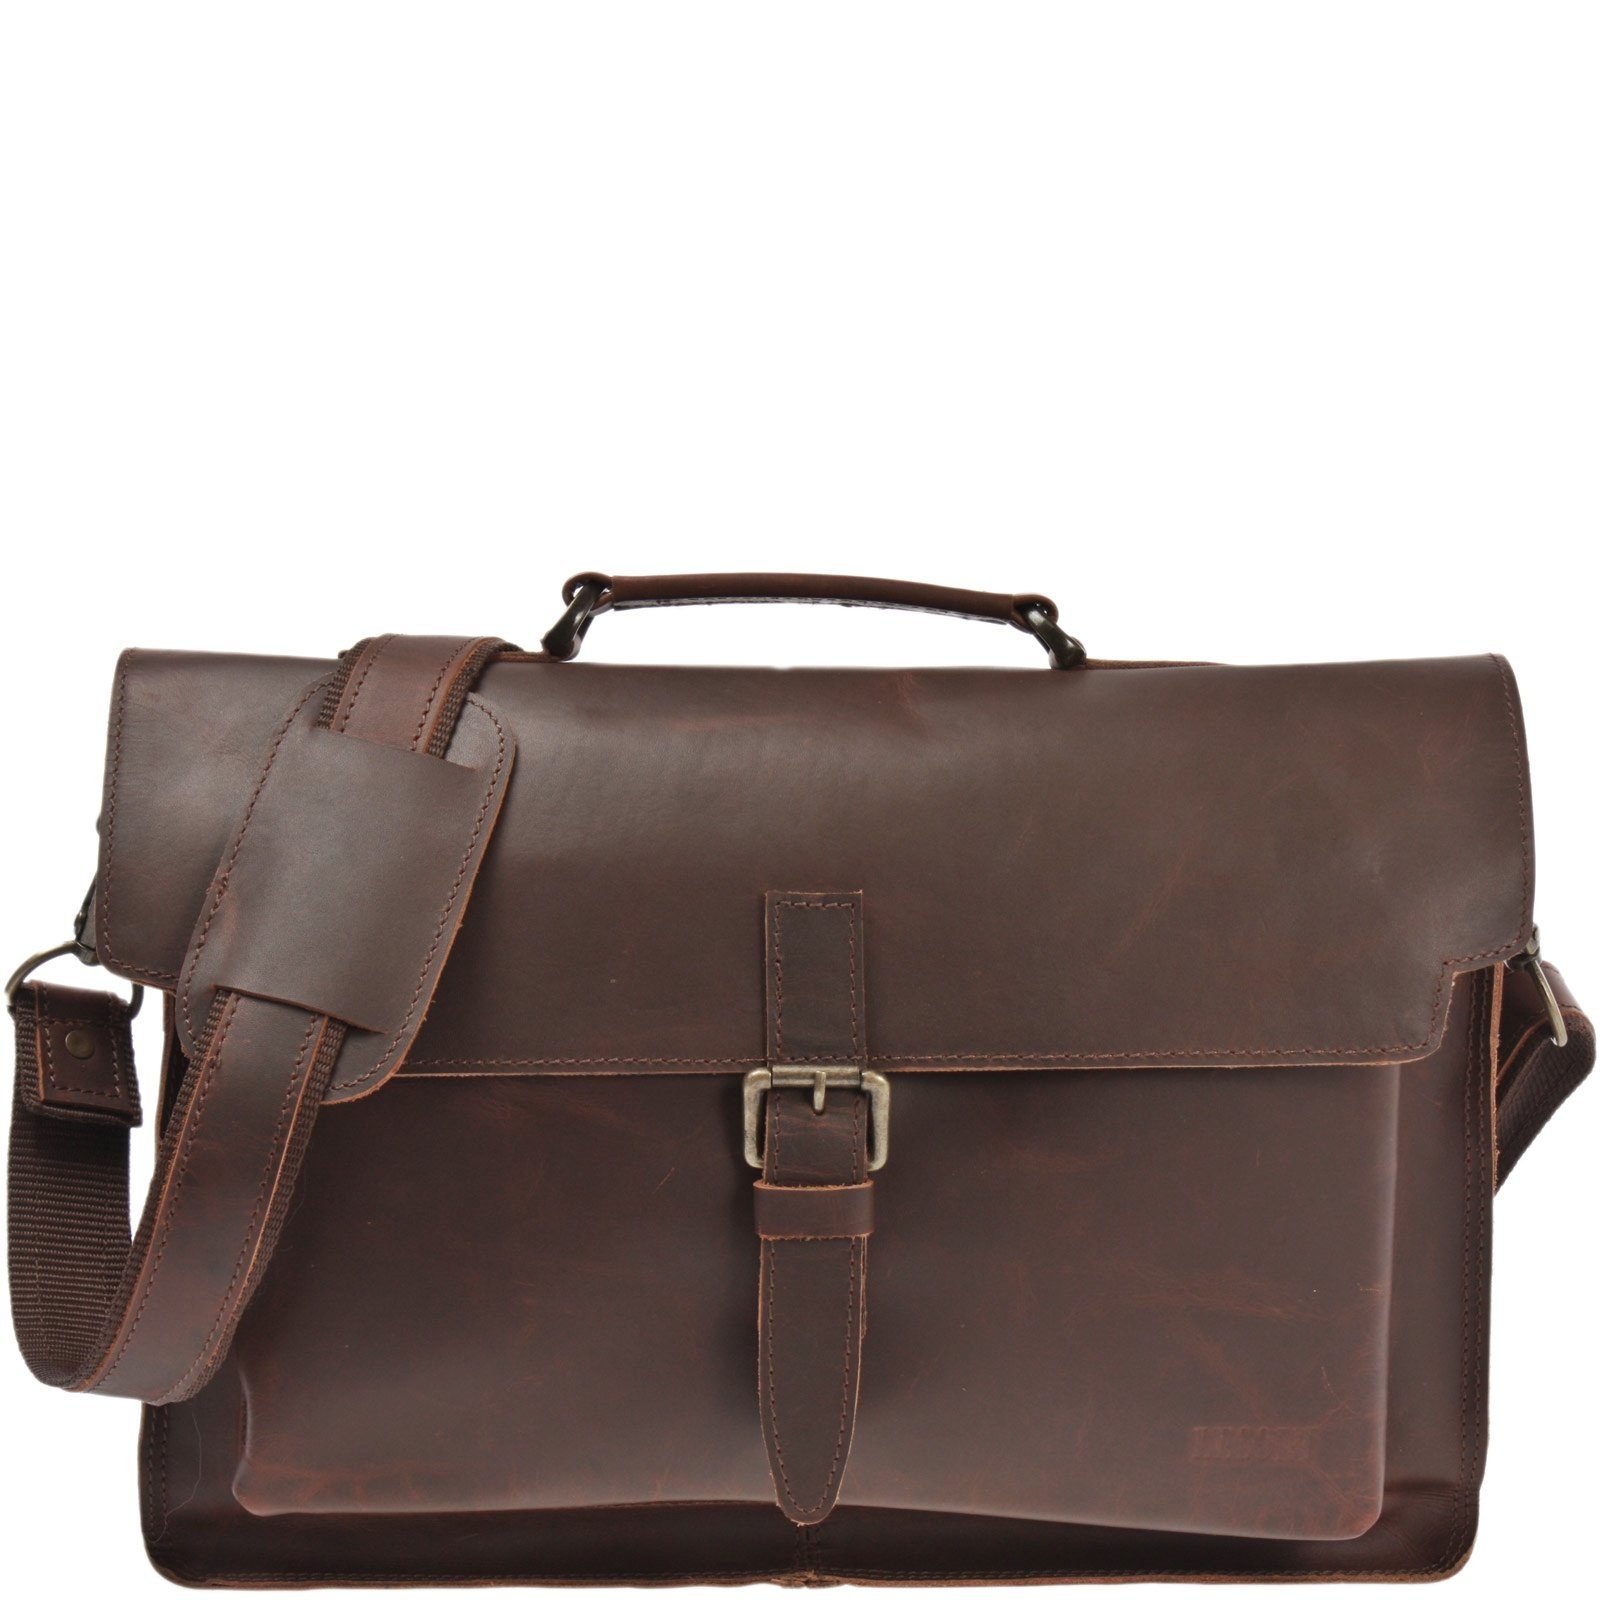 LECONI Aktentasche Aktentasche Businesstasche Messenger Bag Vintage Leder LE3008 braun